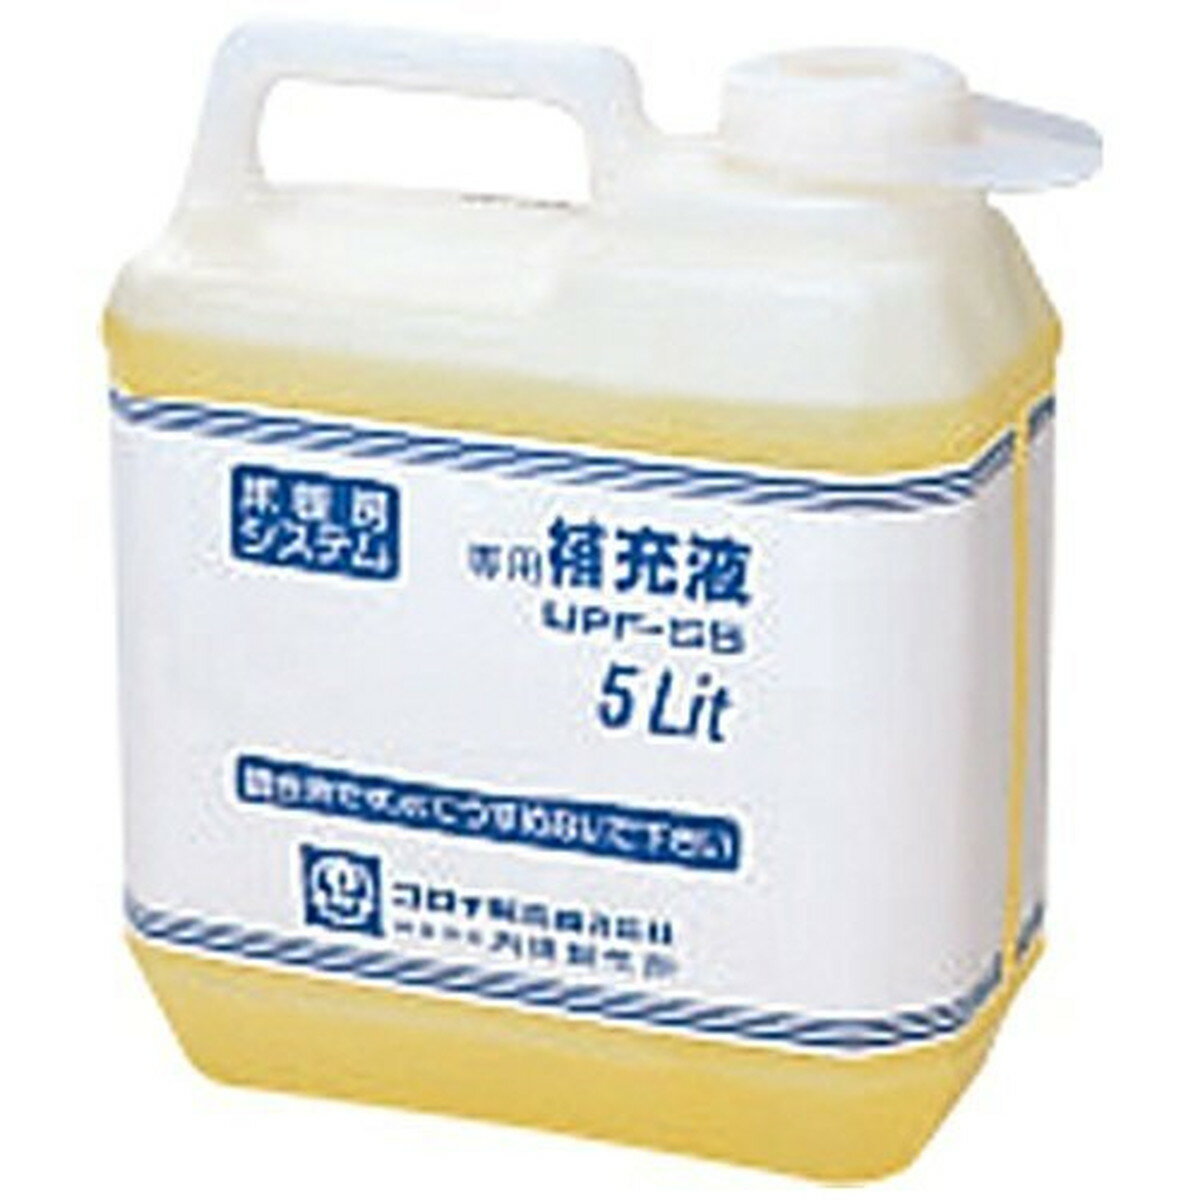 コロナ 専用補充液 (5L) UPF-S5 補充液